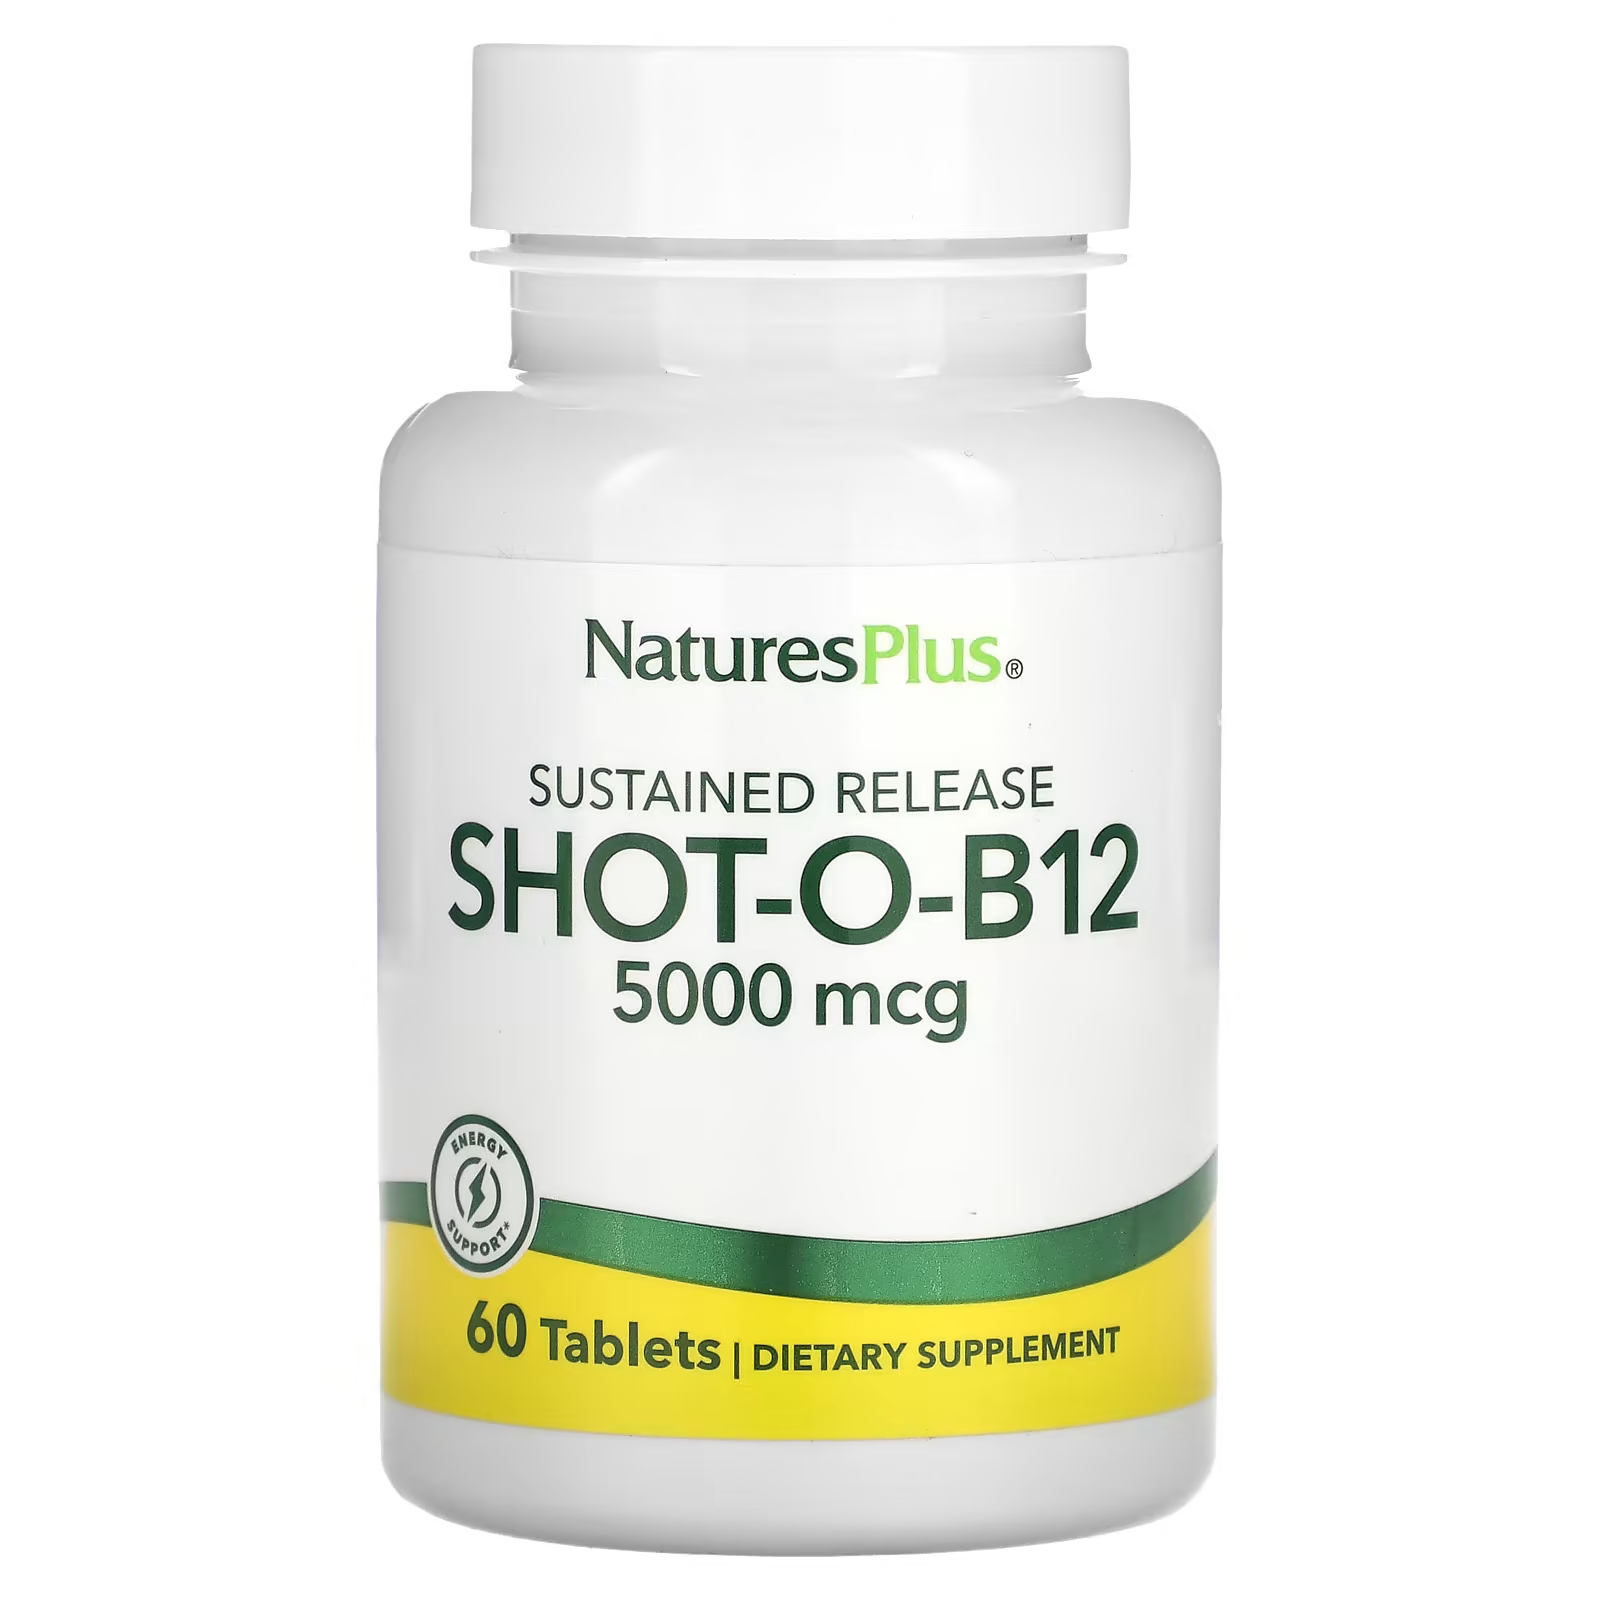 биологически активная добавка naturesplus shot o b12 5000 мкг 30 таблеток Биологически активная добавка NaturesPlus, Shot-O-B12 с замедленным высвобождением, 5000 мкг., 60 таблеток